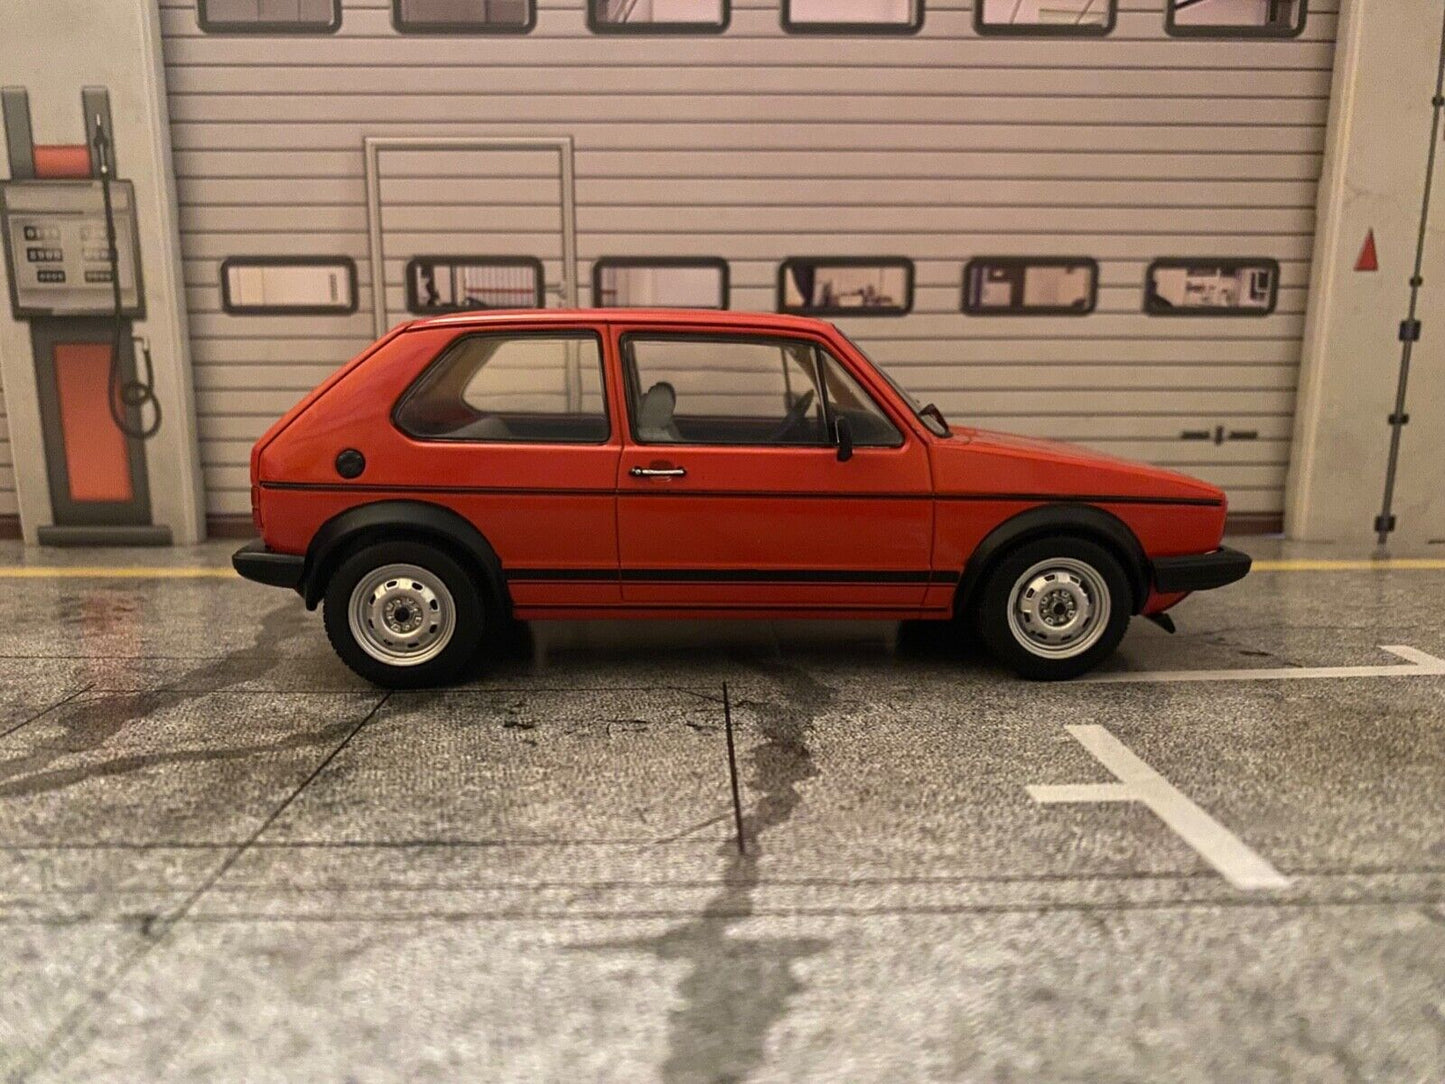 VW Golf 1 GTI 1983 Marsrot red rot gebraucht ohne OVP (kein 1:18) 1:24